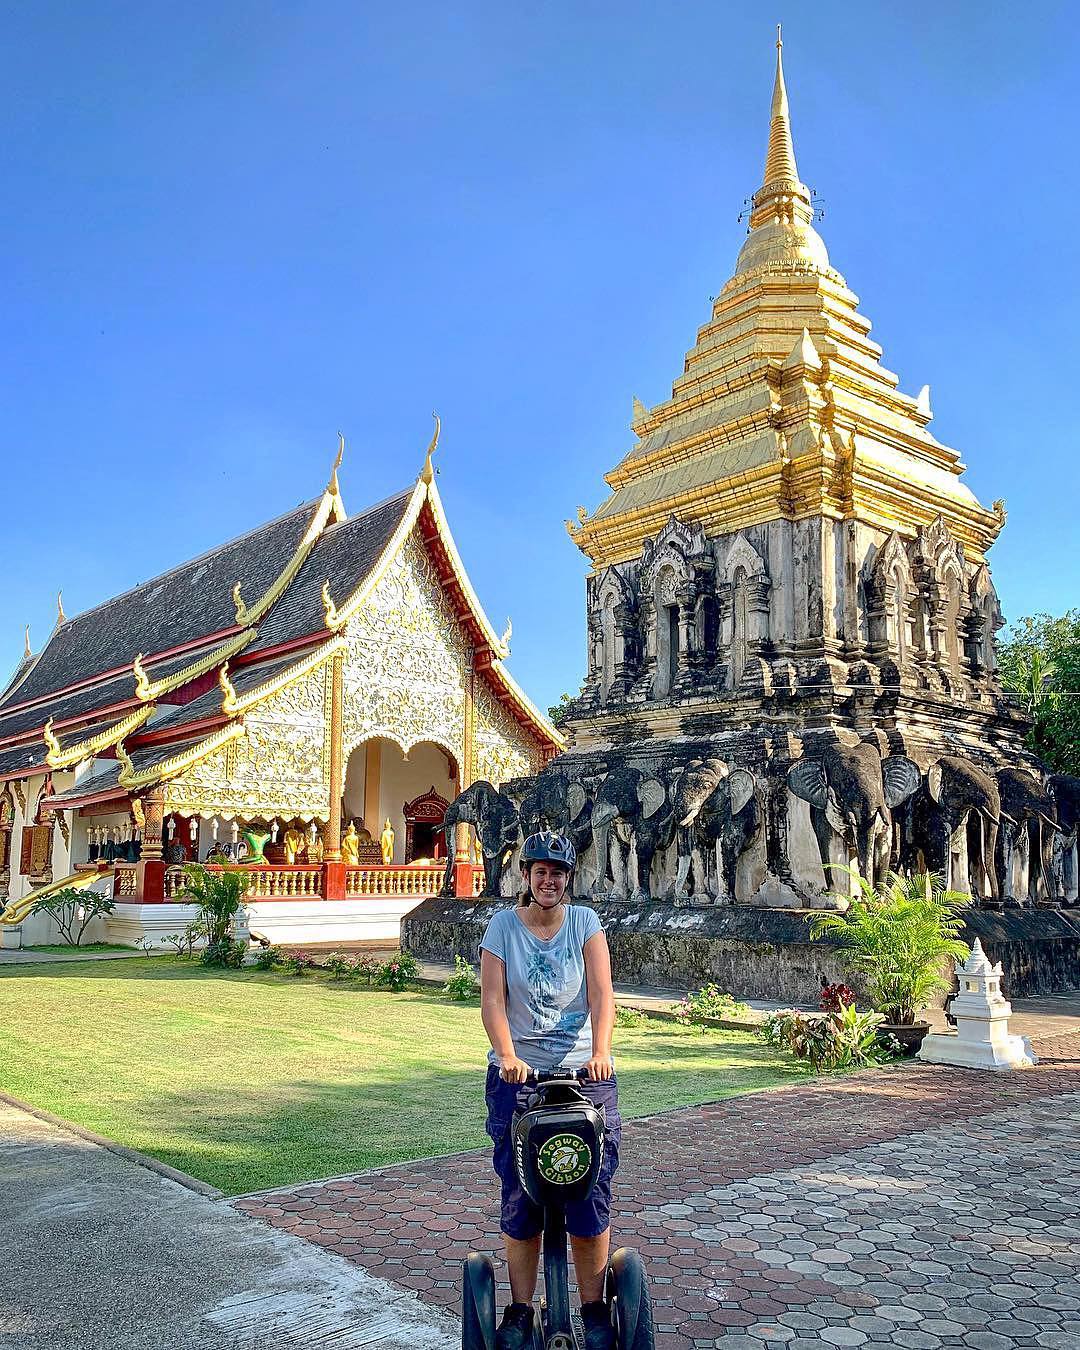 Segway tour through Chiang Mai 🤙🏼 here in front of Wat Chiang Man #chiangmai #thailand #asia #watchiangman #temple #travel #segway #tour